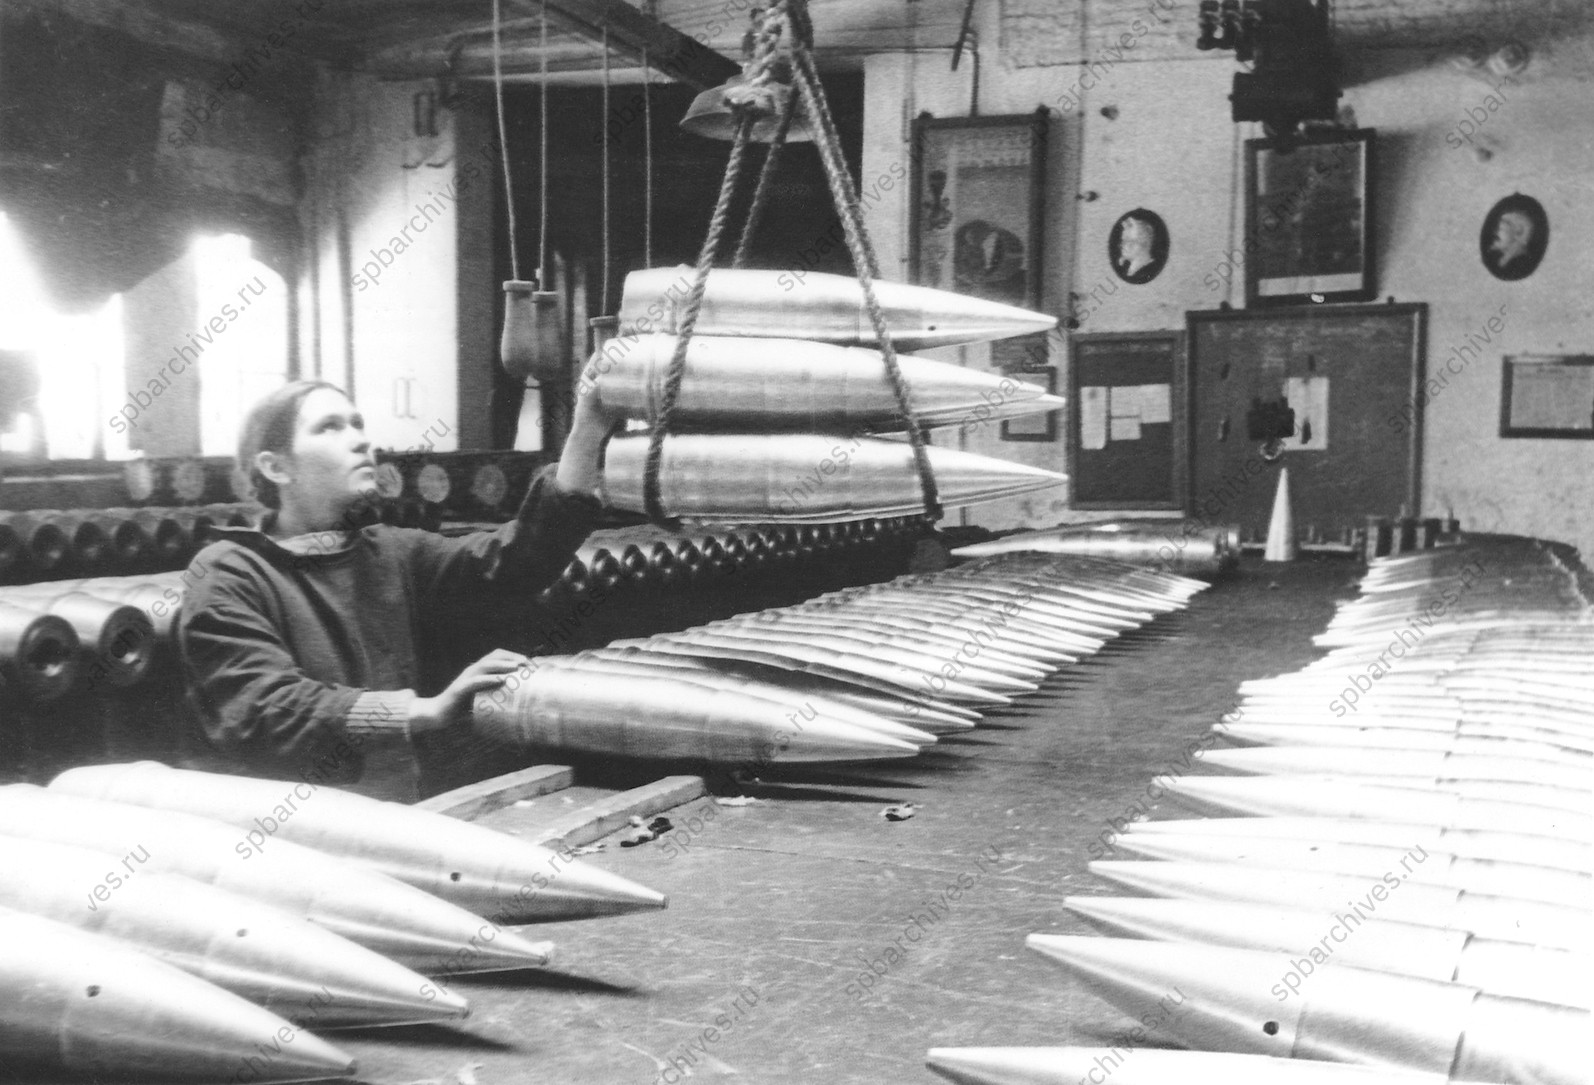 Работница Н-ского завода укладывает снаряды, изготовленные для фронта.<br />
Ленинград. 1943 г.<br />
Автор съёмки: Д.М.Трахтенберг.<br />
<em>ЦГАКФФД СПб. Ар99464.</em>